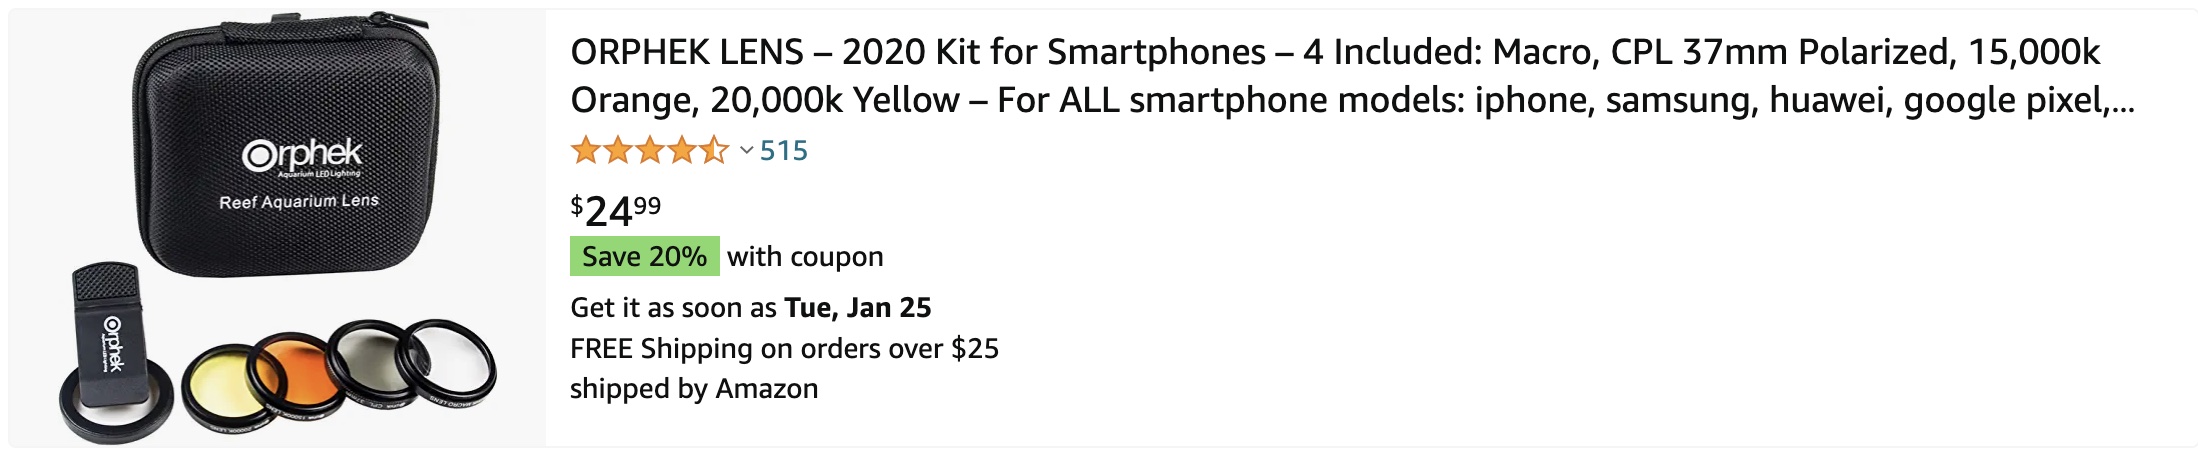 buy on amazon ORPHEK LENS – 2020 Kit for Smartphones